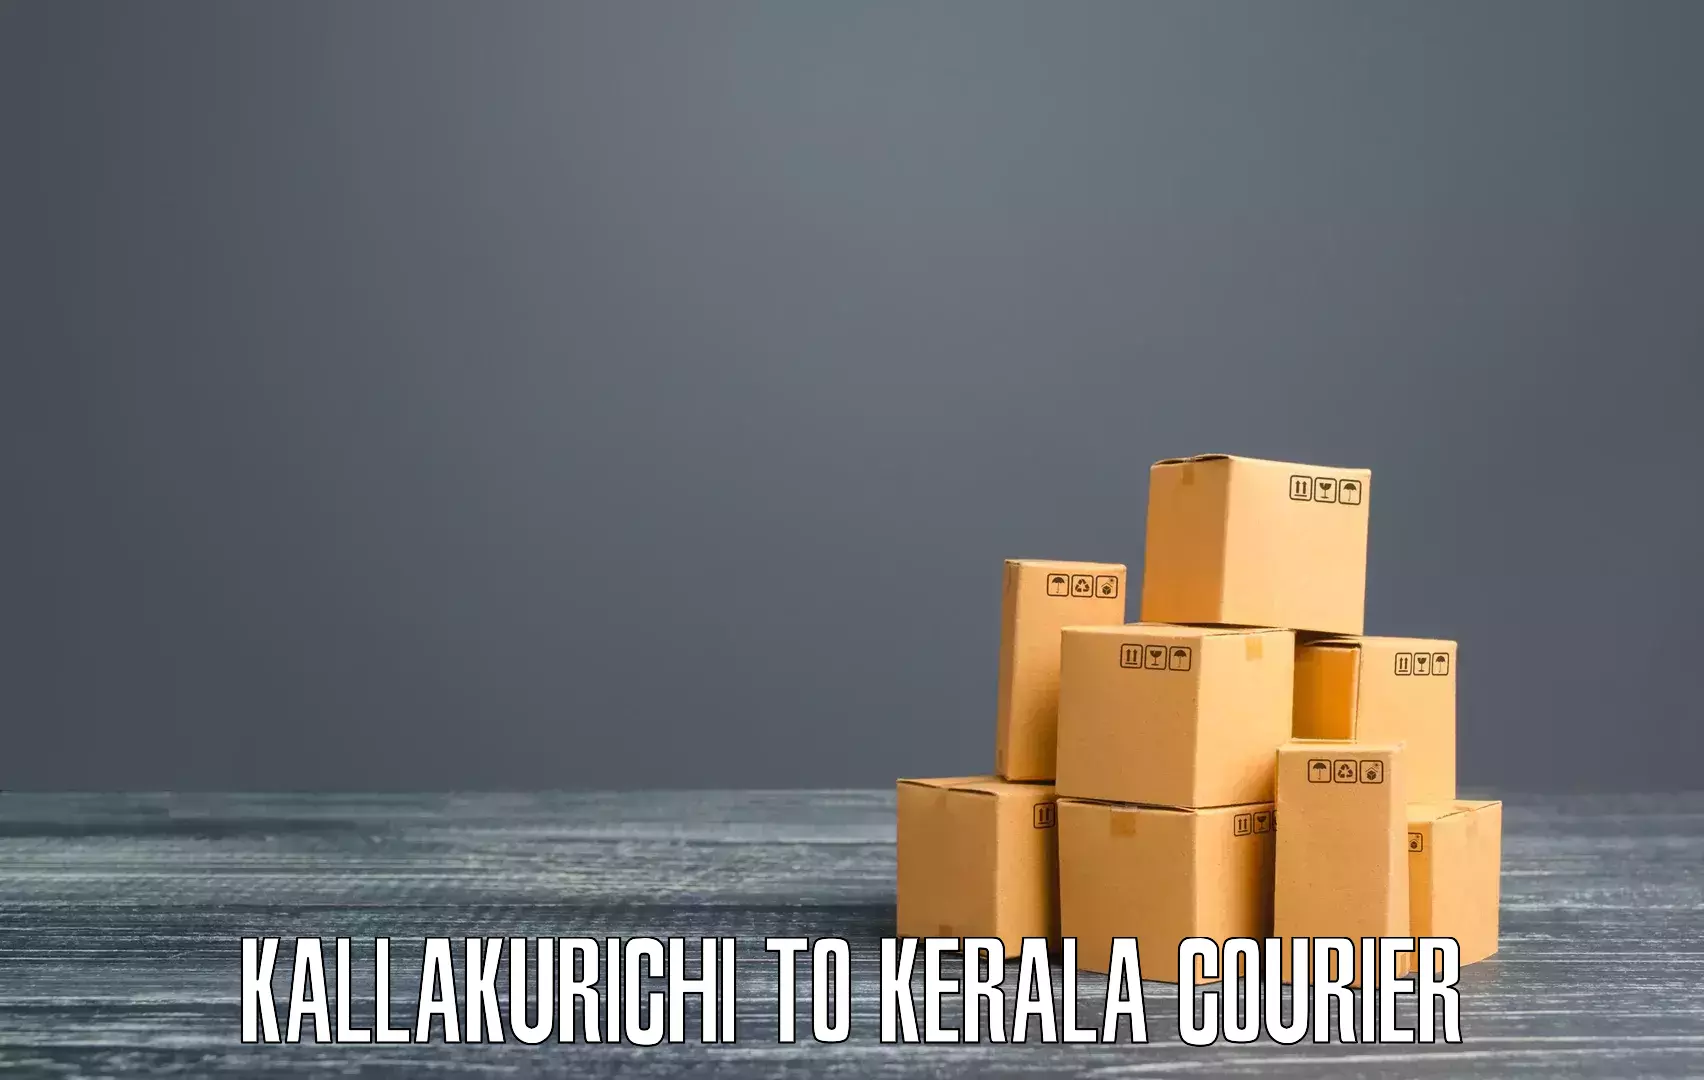 Commercial shipping rates Kallakurichi to Kazhakkoottam